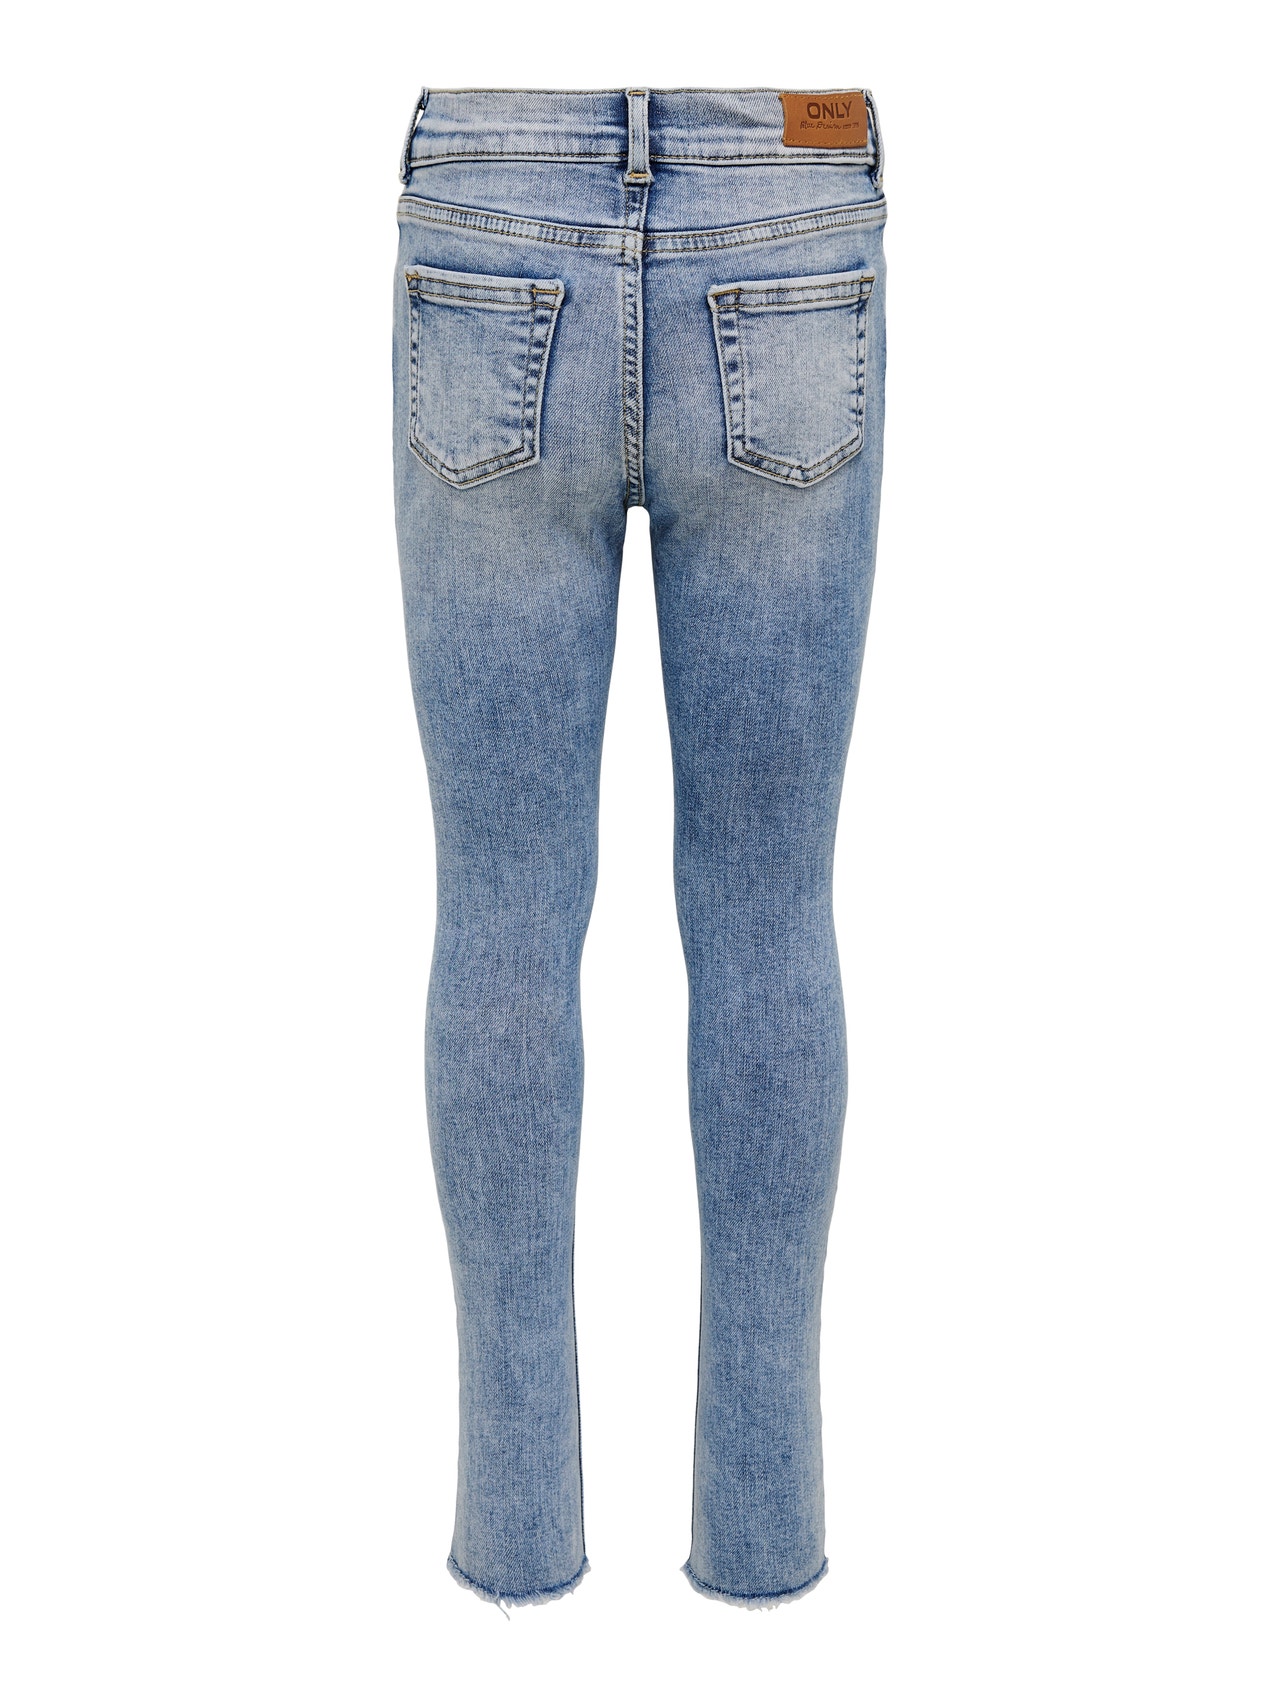 ONLY Jeans Skinny Fit -Light Blue Denim - 15222975